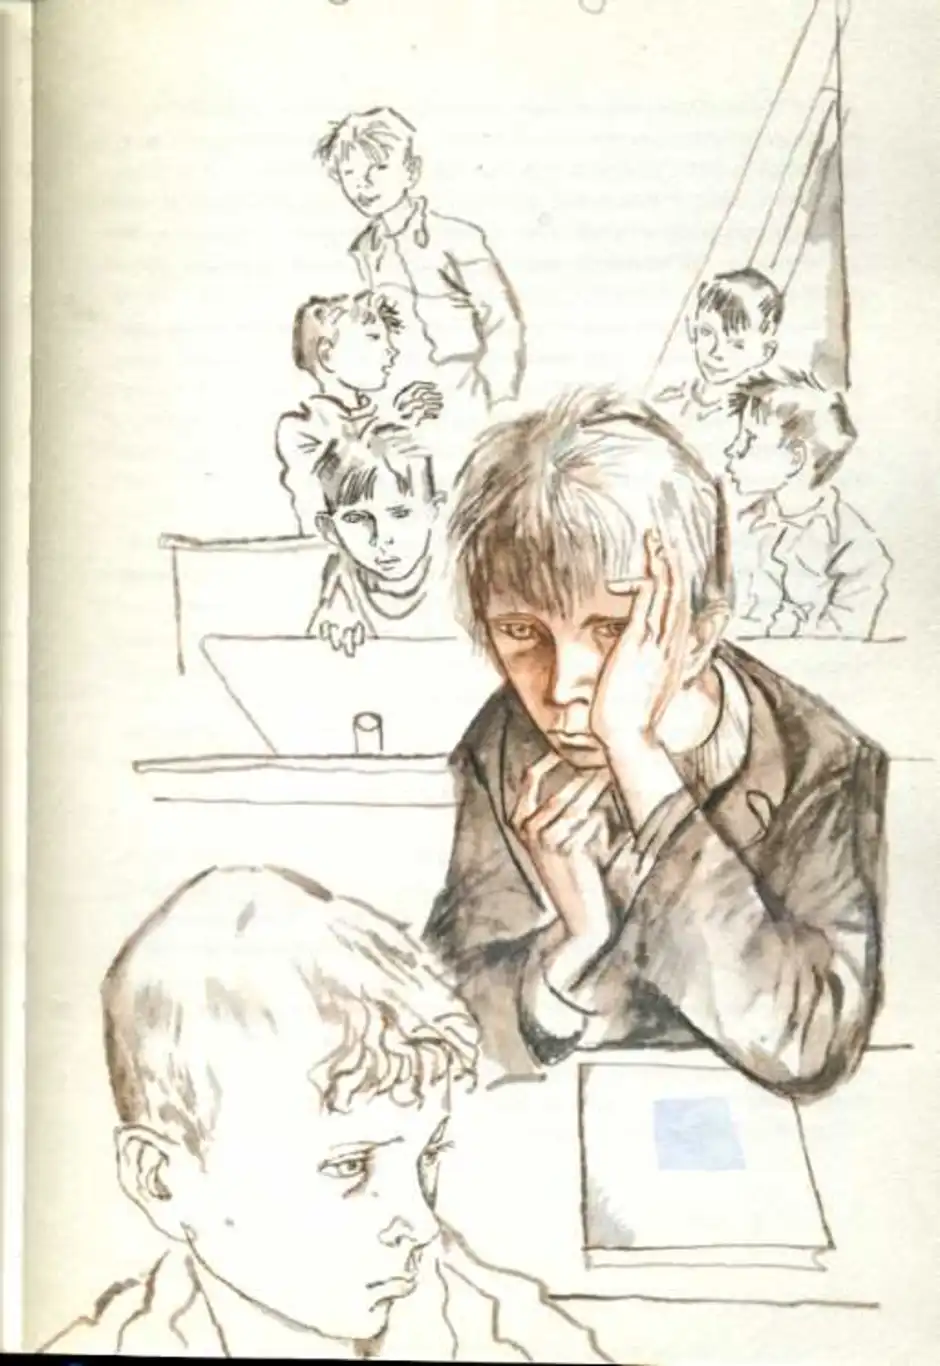 Иллюстрация к рассказу уроки французского 6 класс. Распутин уроки французского иллюстрации к рассказу.